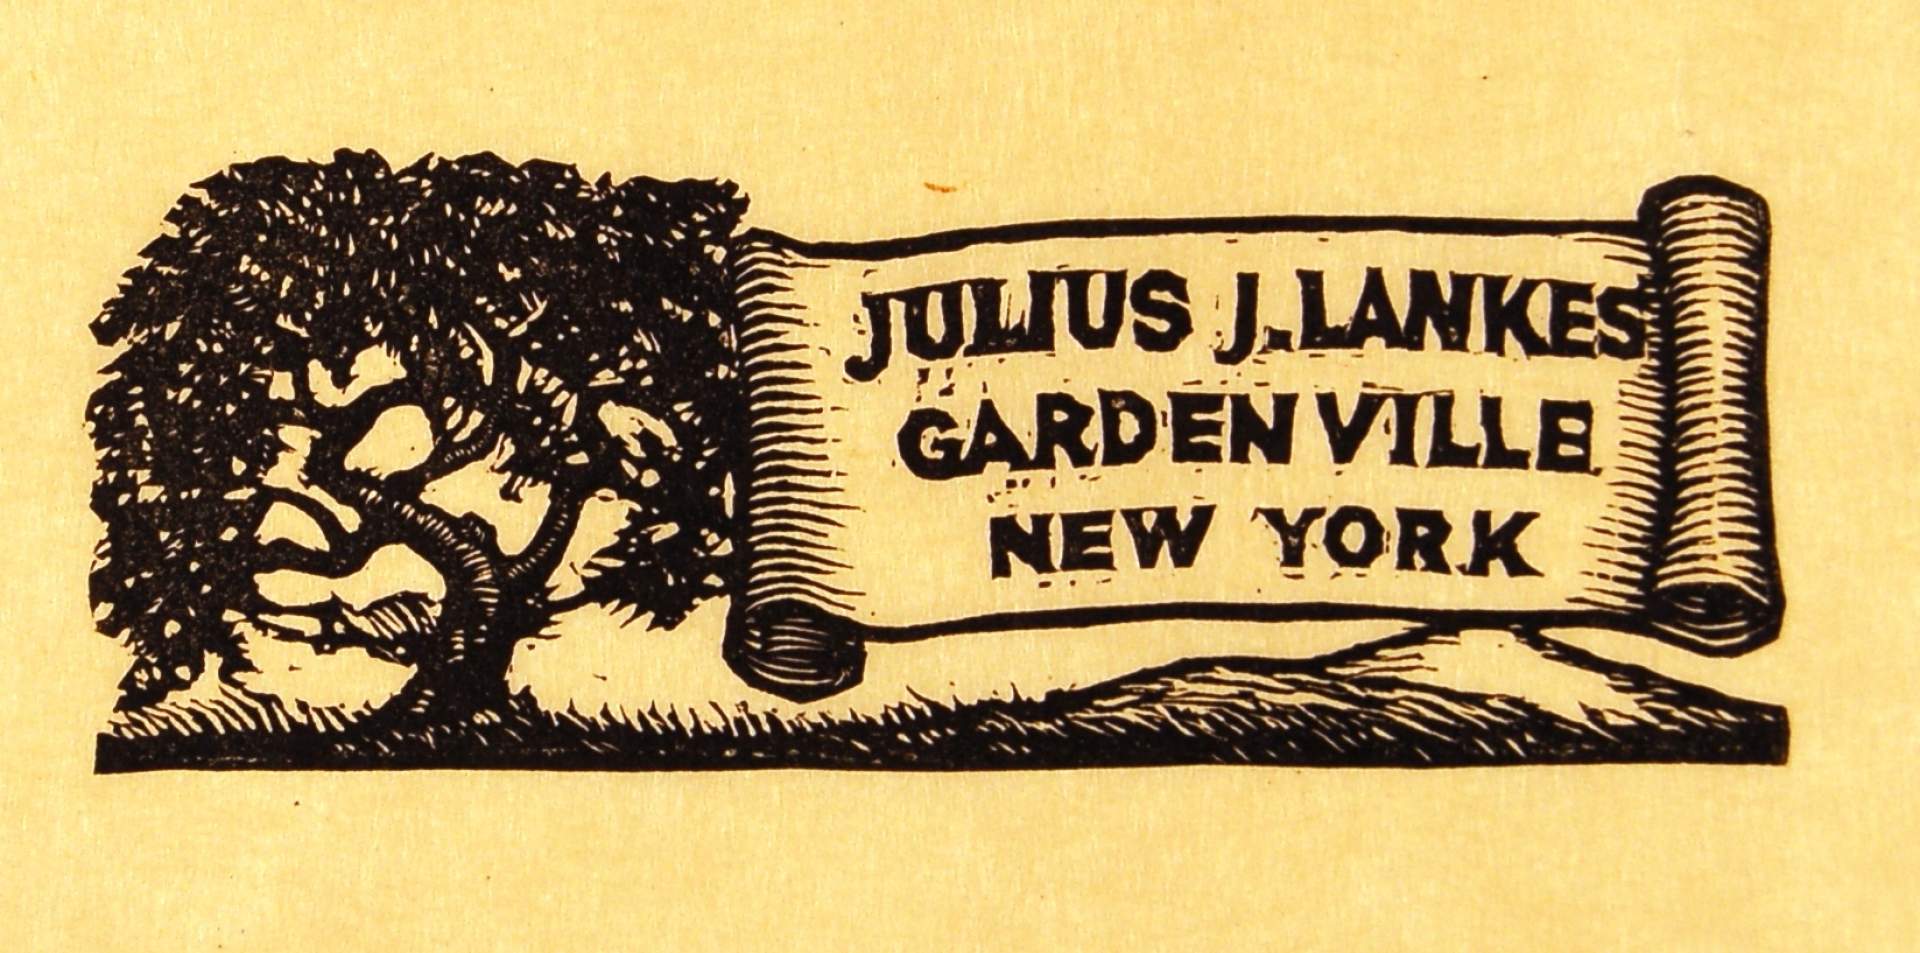 letterhead [JULIUS J. LANKES / GARDENVILLE / NEW YORK]